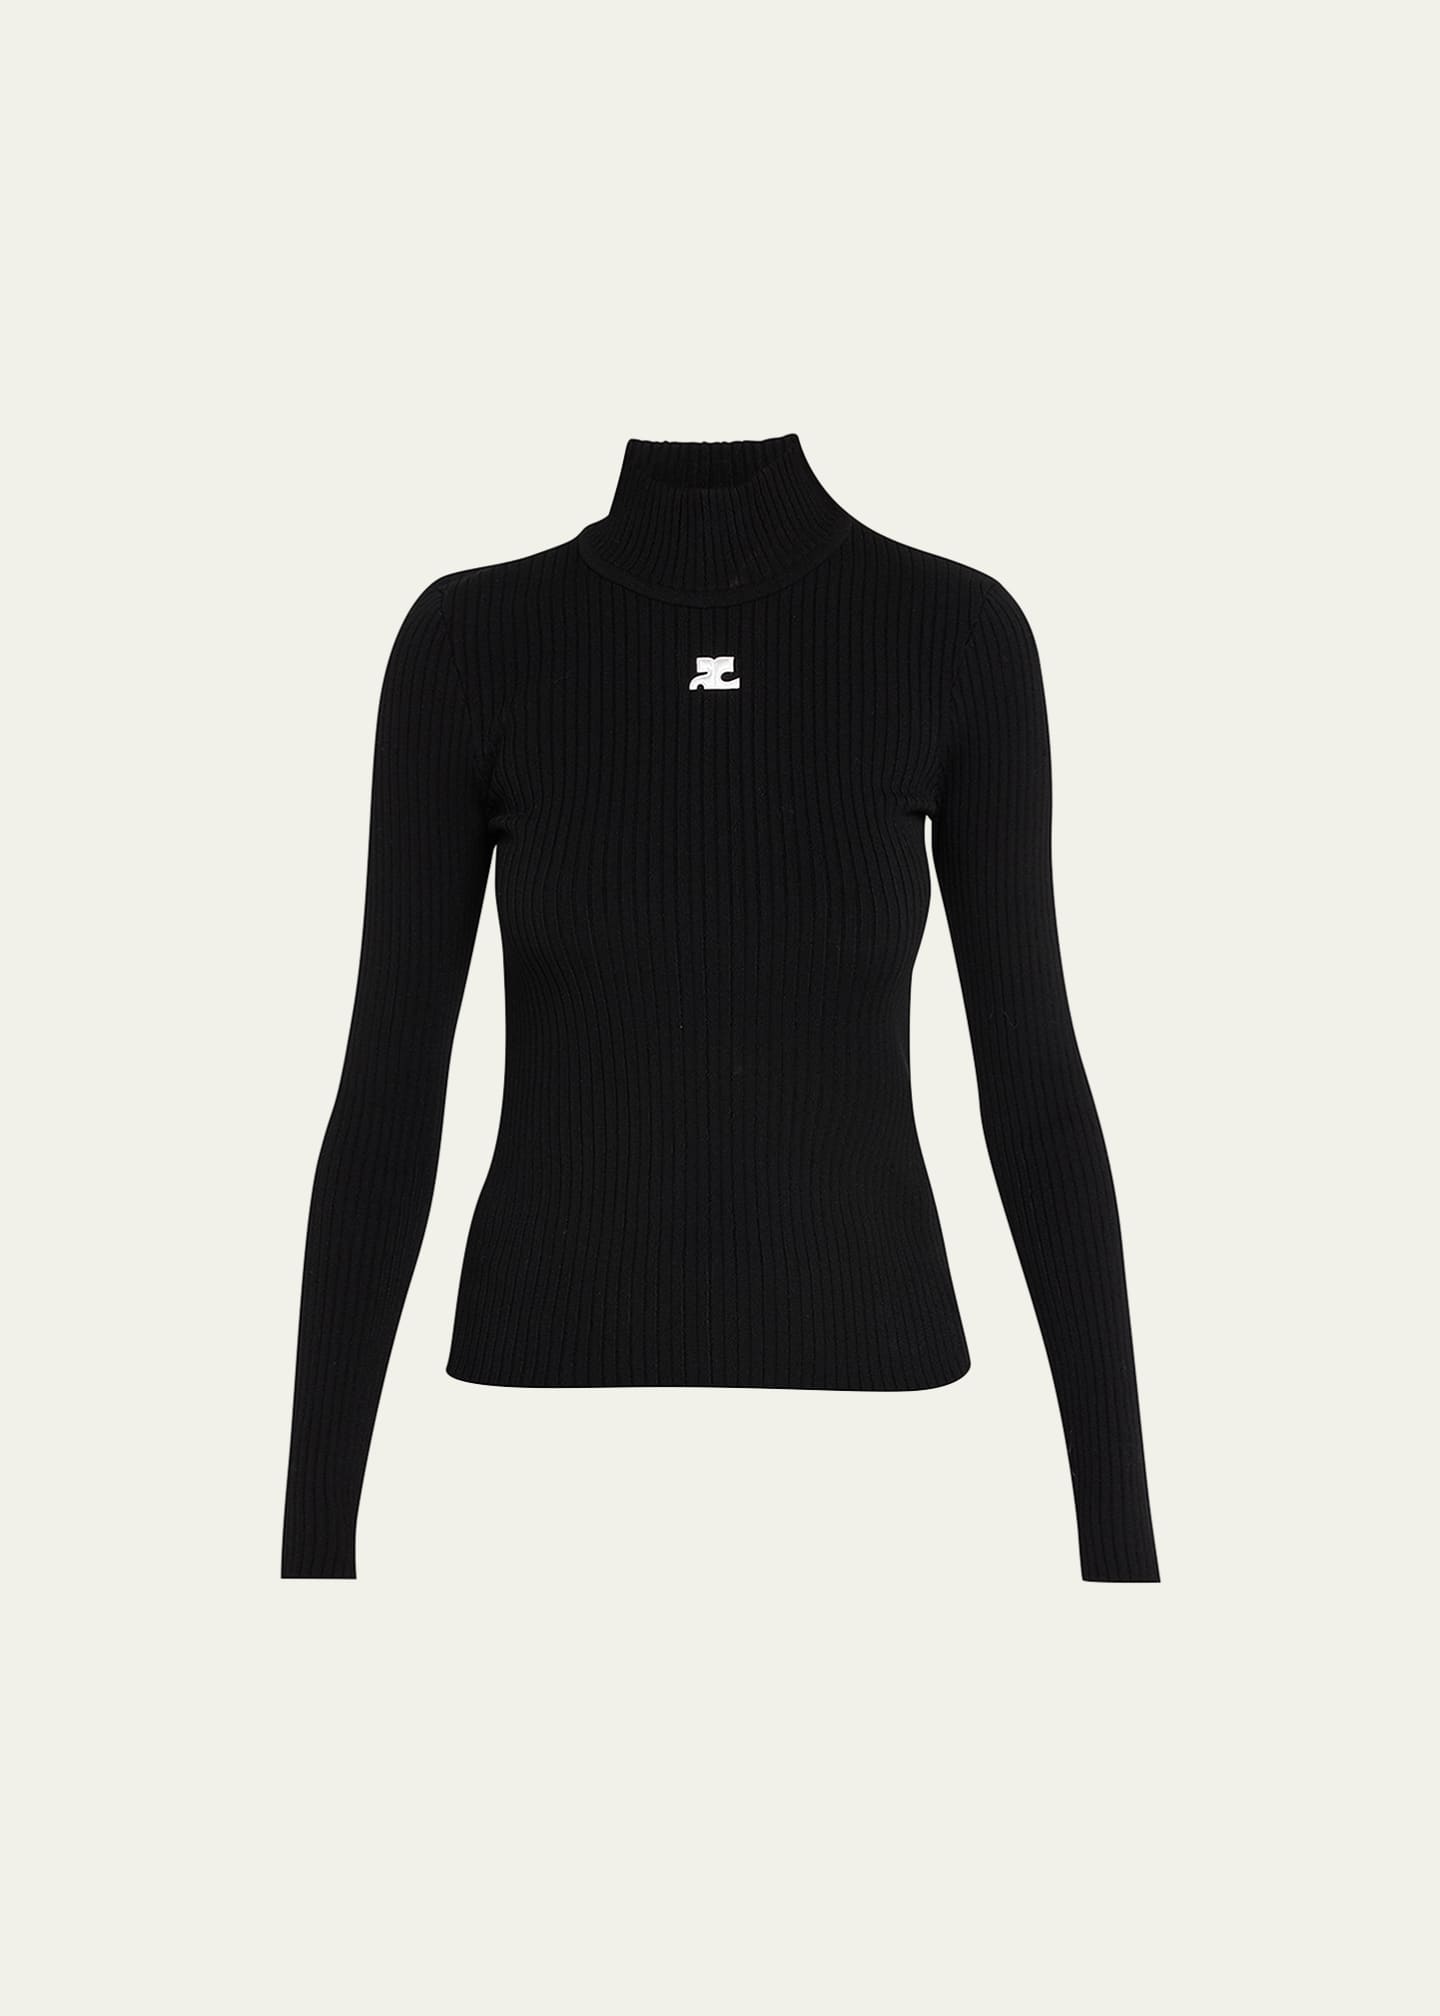 Louis Vuitton D-Ring Turtleneck Sweater, Grey, M